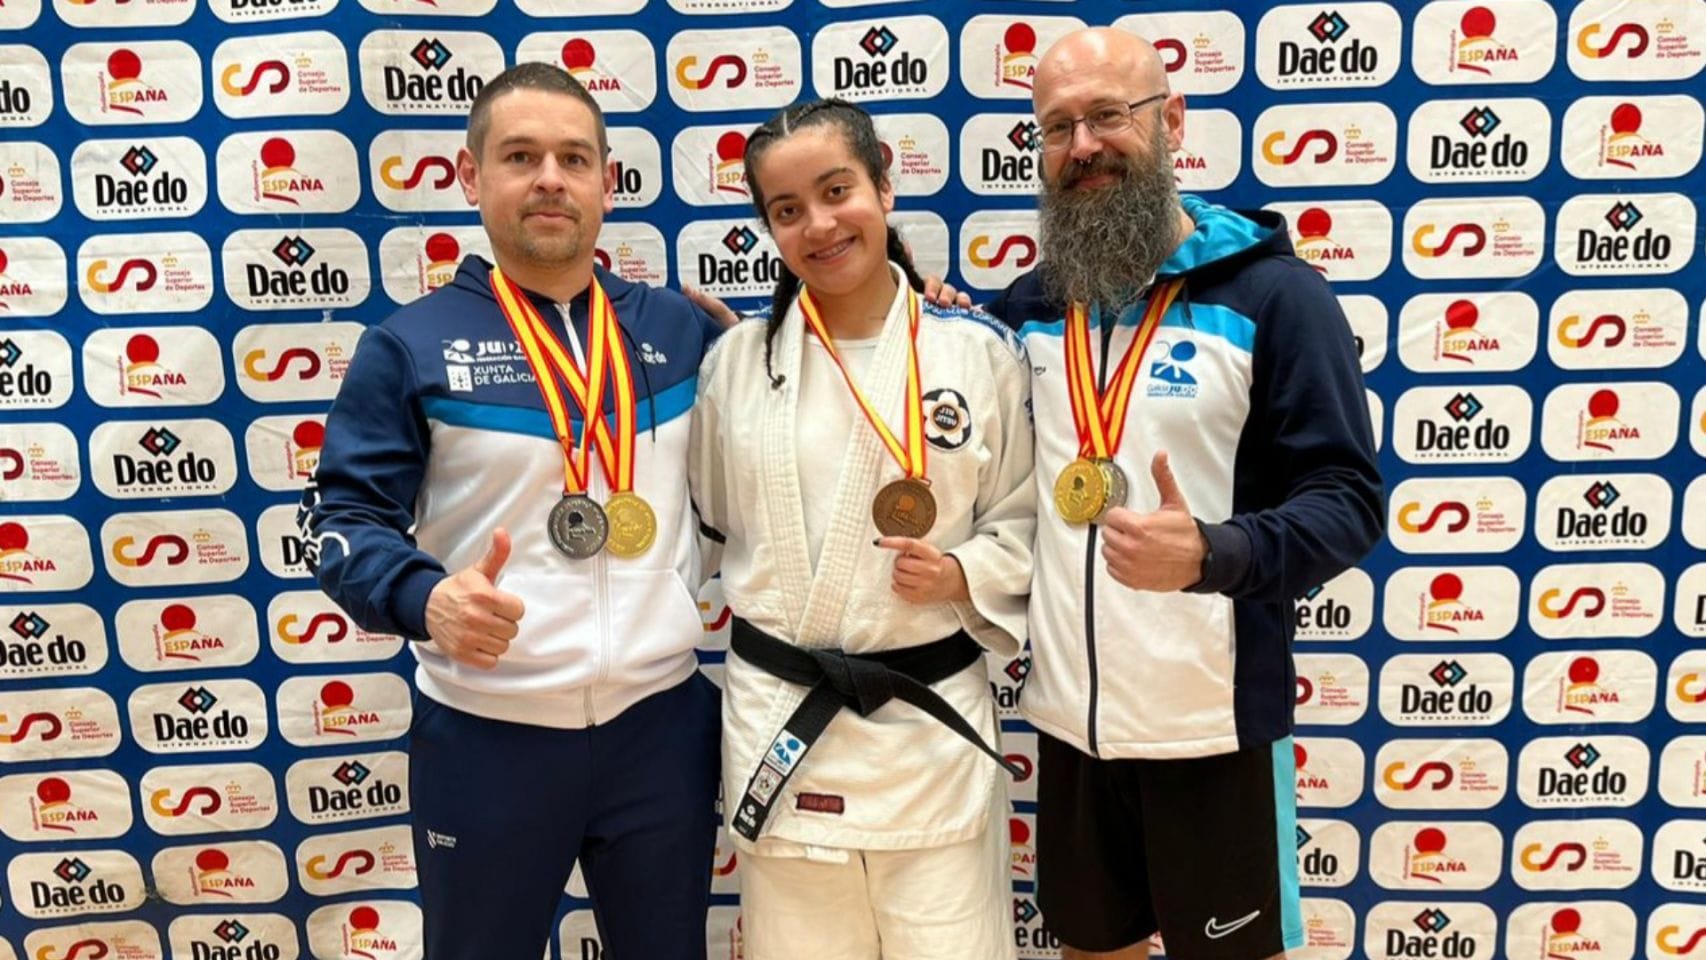 Alex Álvarez, David Pardavila y Andrea Castro se proclamaron campeones y subcampeones de España en Jiu Jitsu.